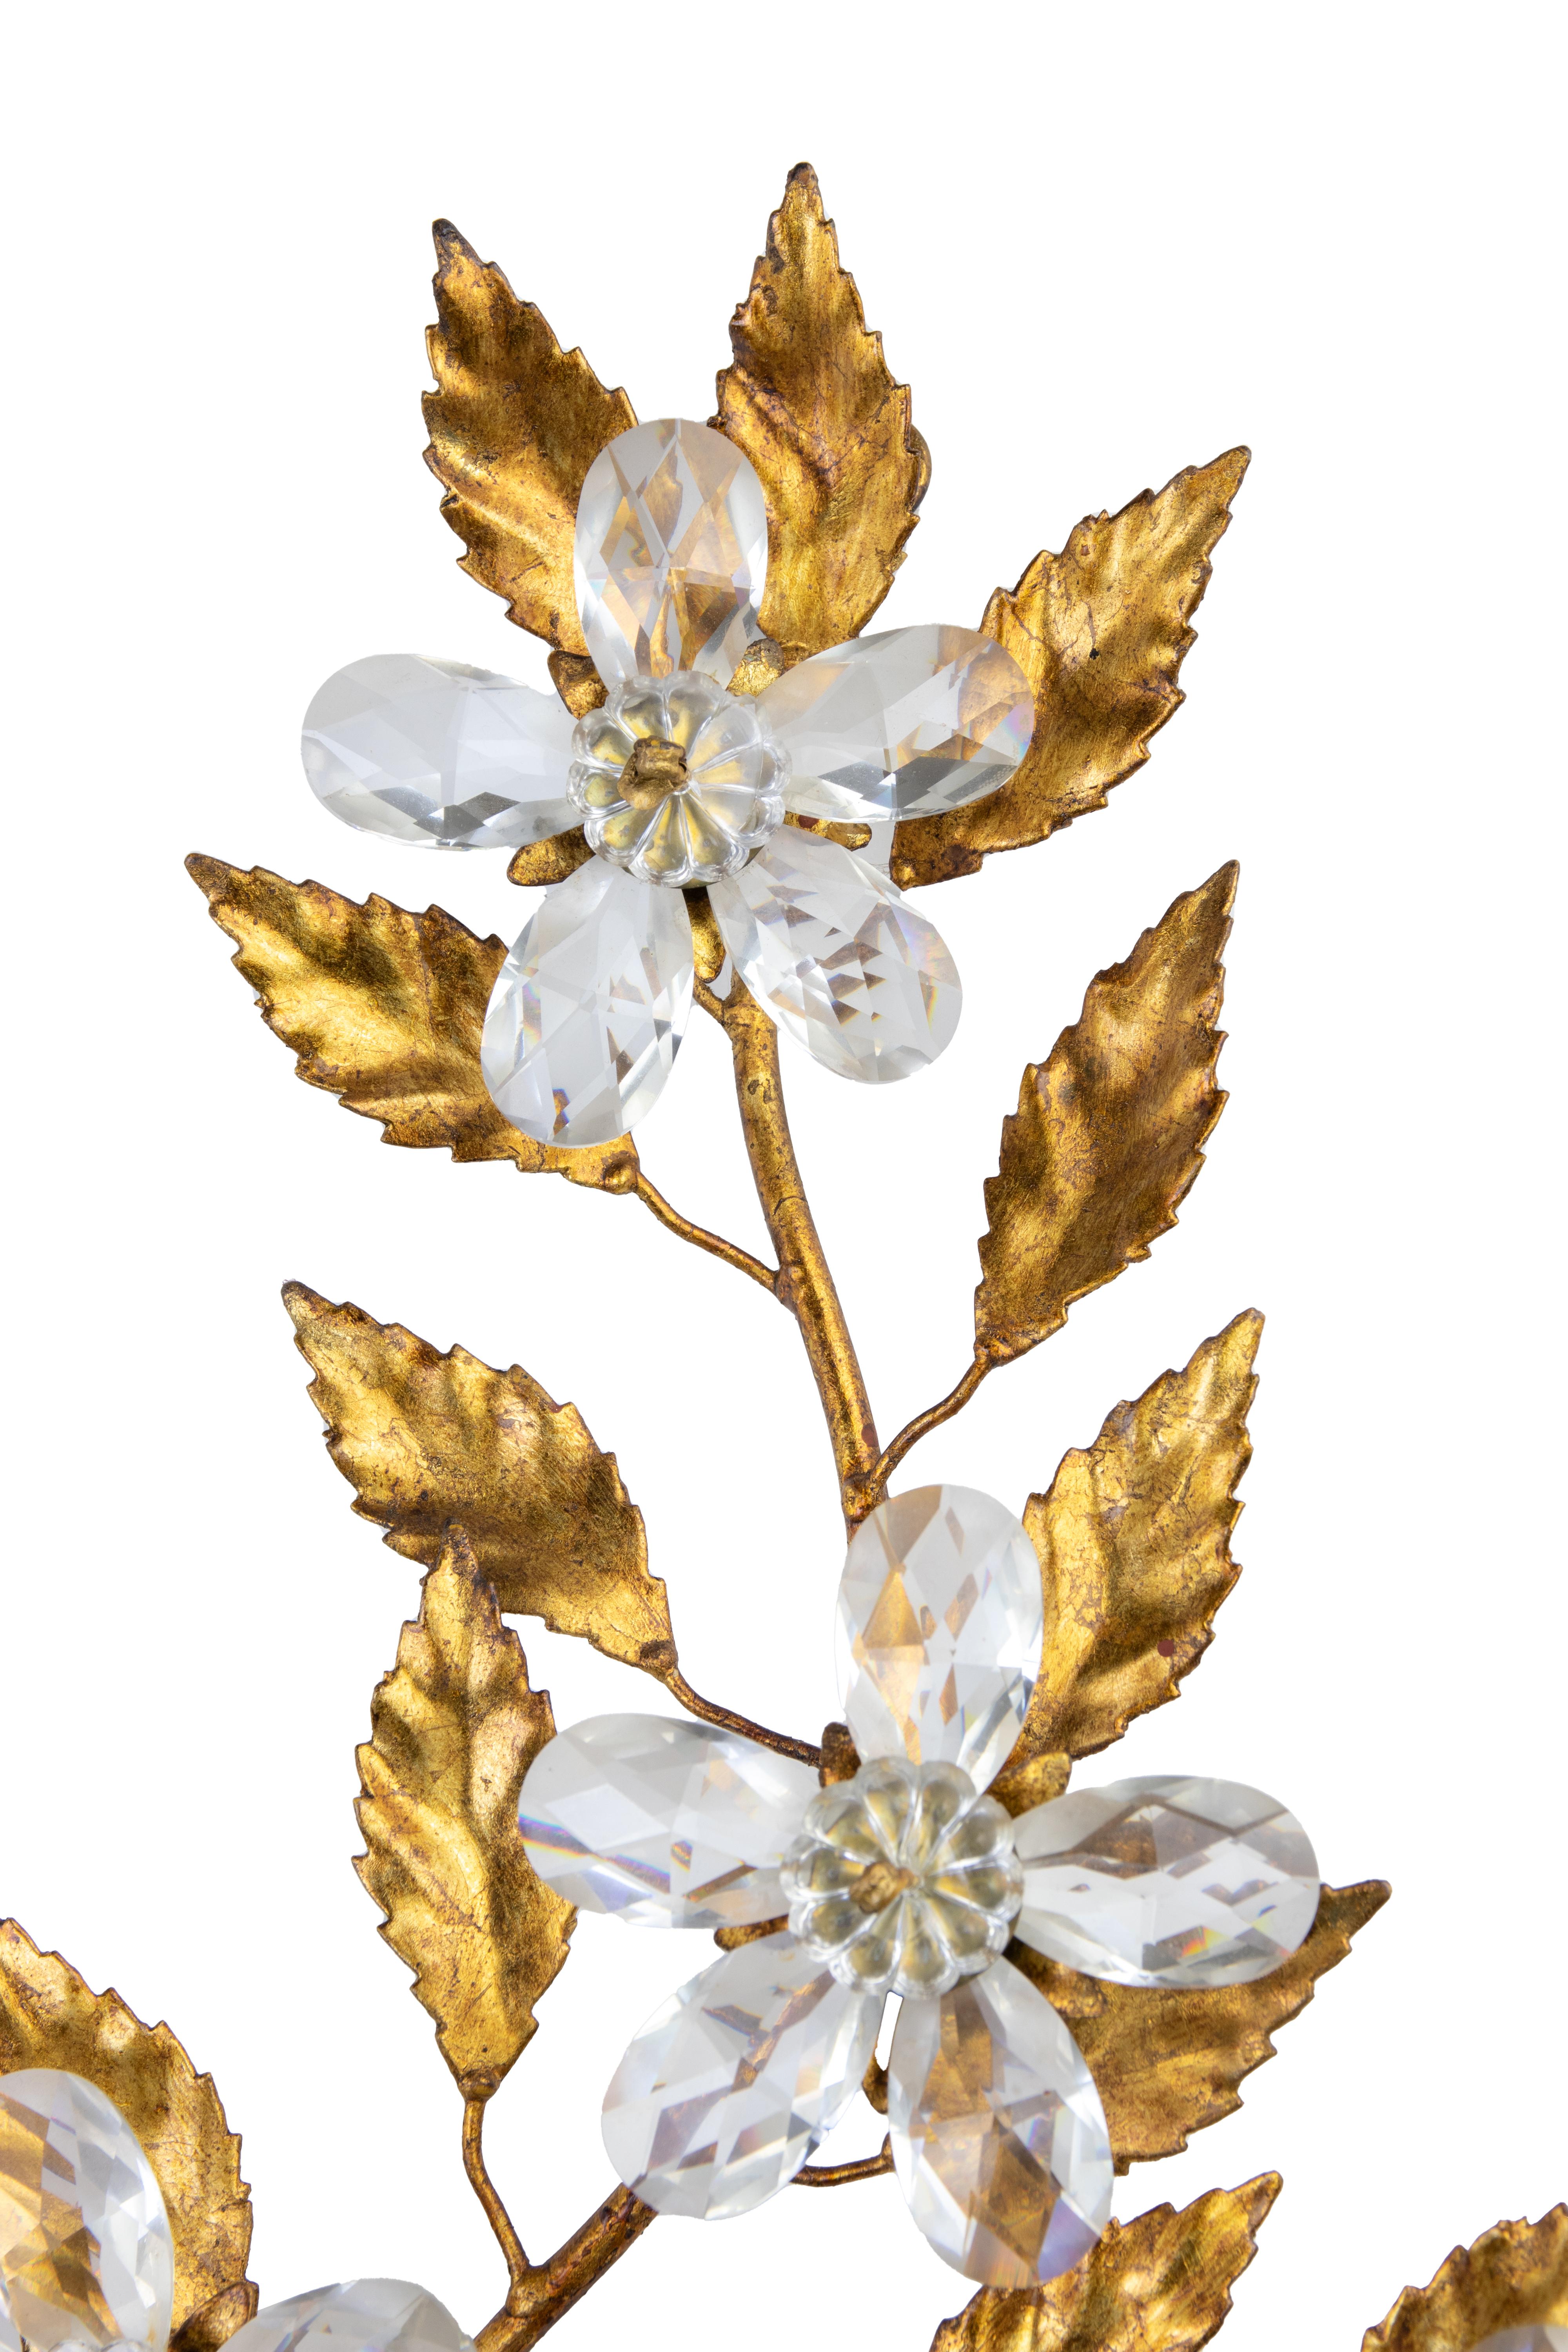 Applique en laiton doré dans le style de Hans Kogl, fin du 20e siècle.

2 lumières, avec des gouttes de cristal en forme de fleurs.

60 x 48 cm.

Très bon état. 